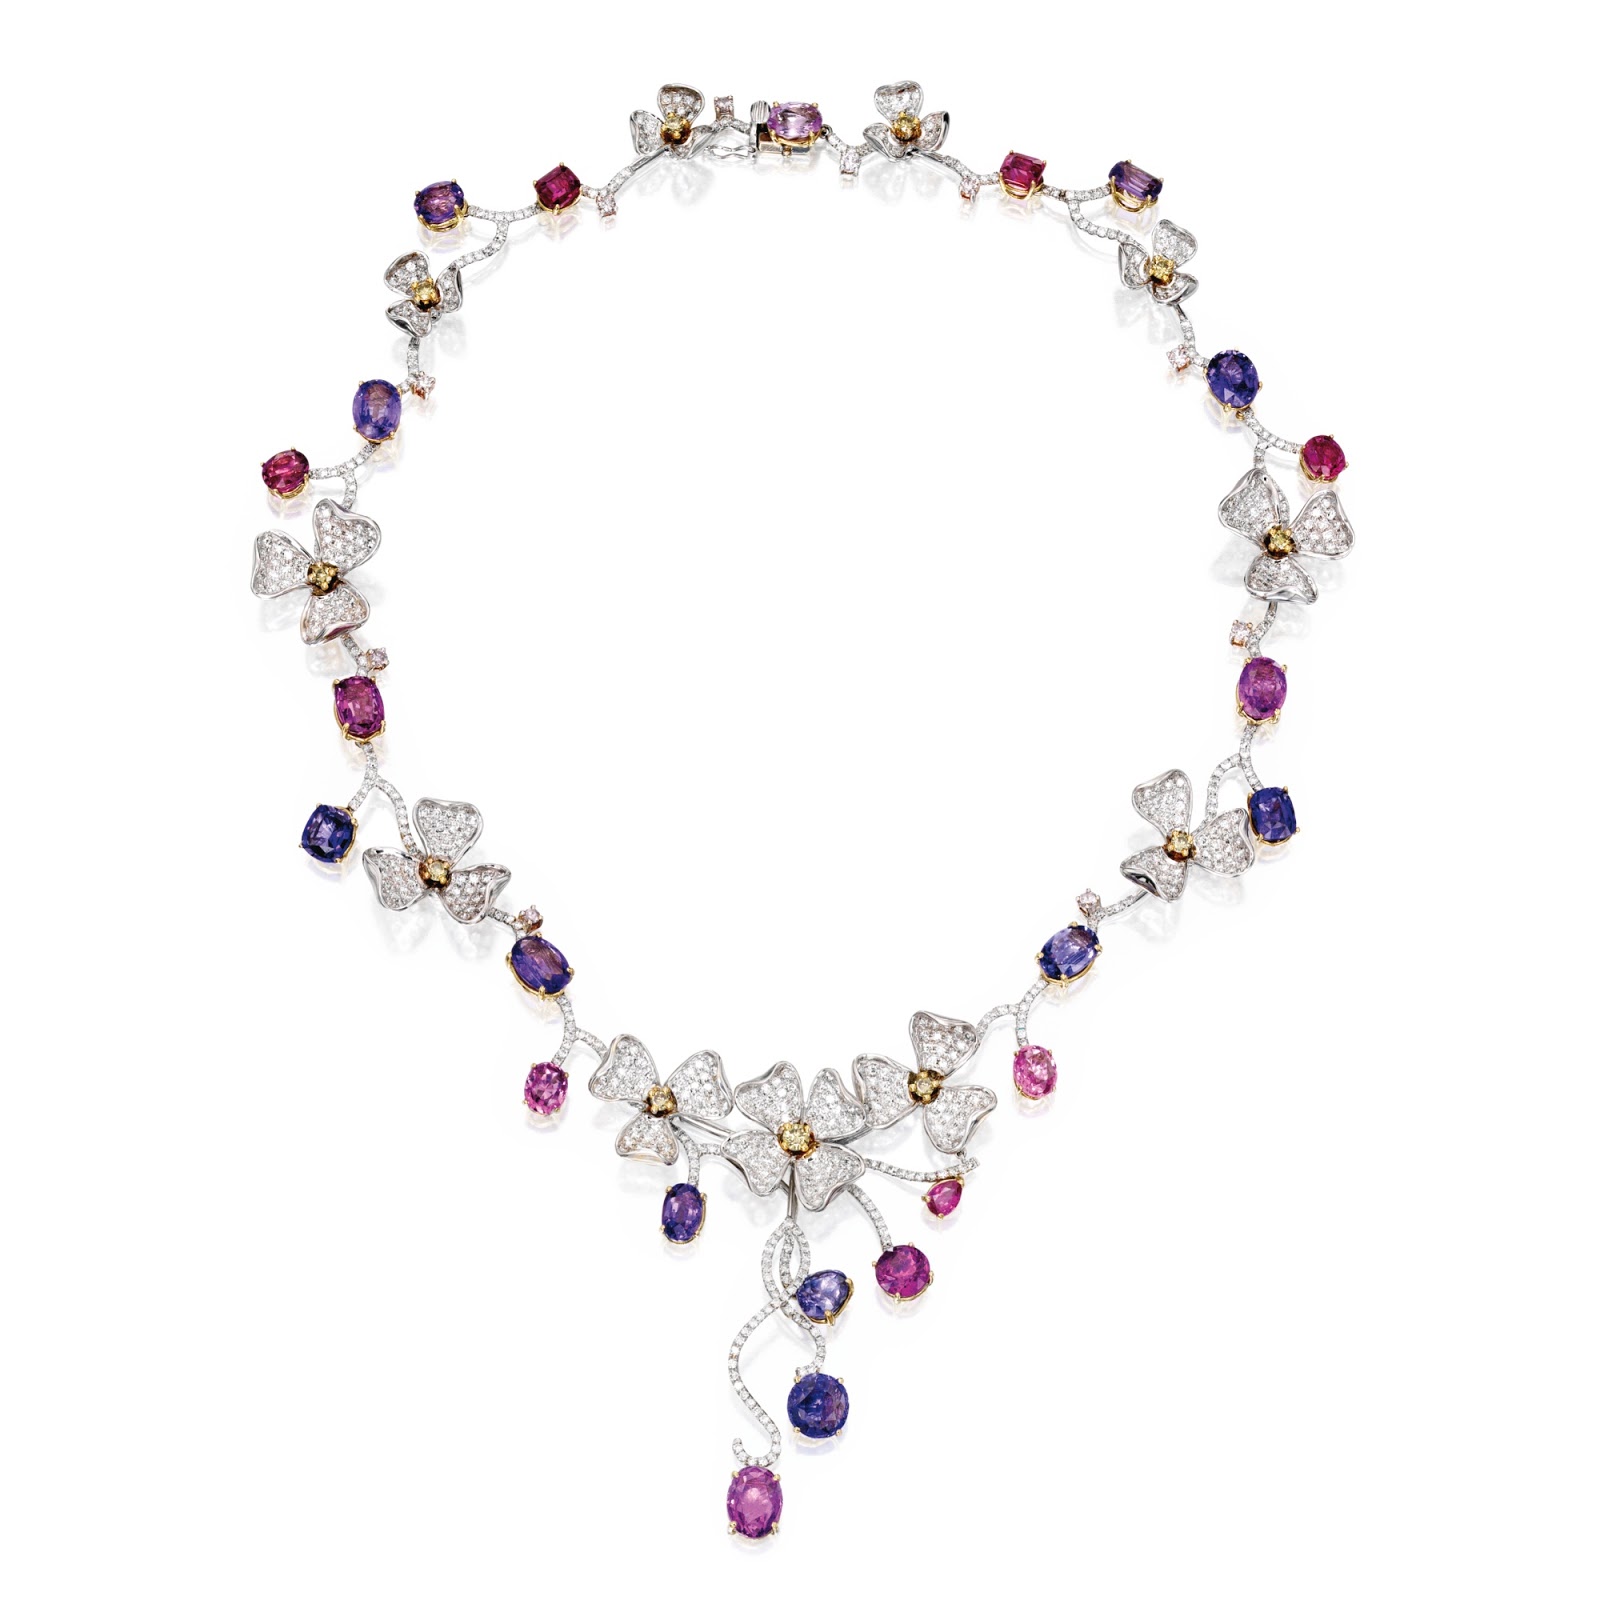 Marie Poutine's Jewels & Royals: Magnificent Sapphire Necklaces